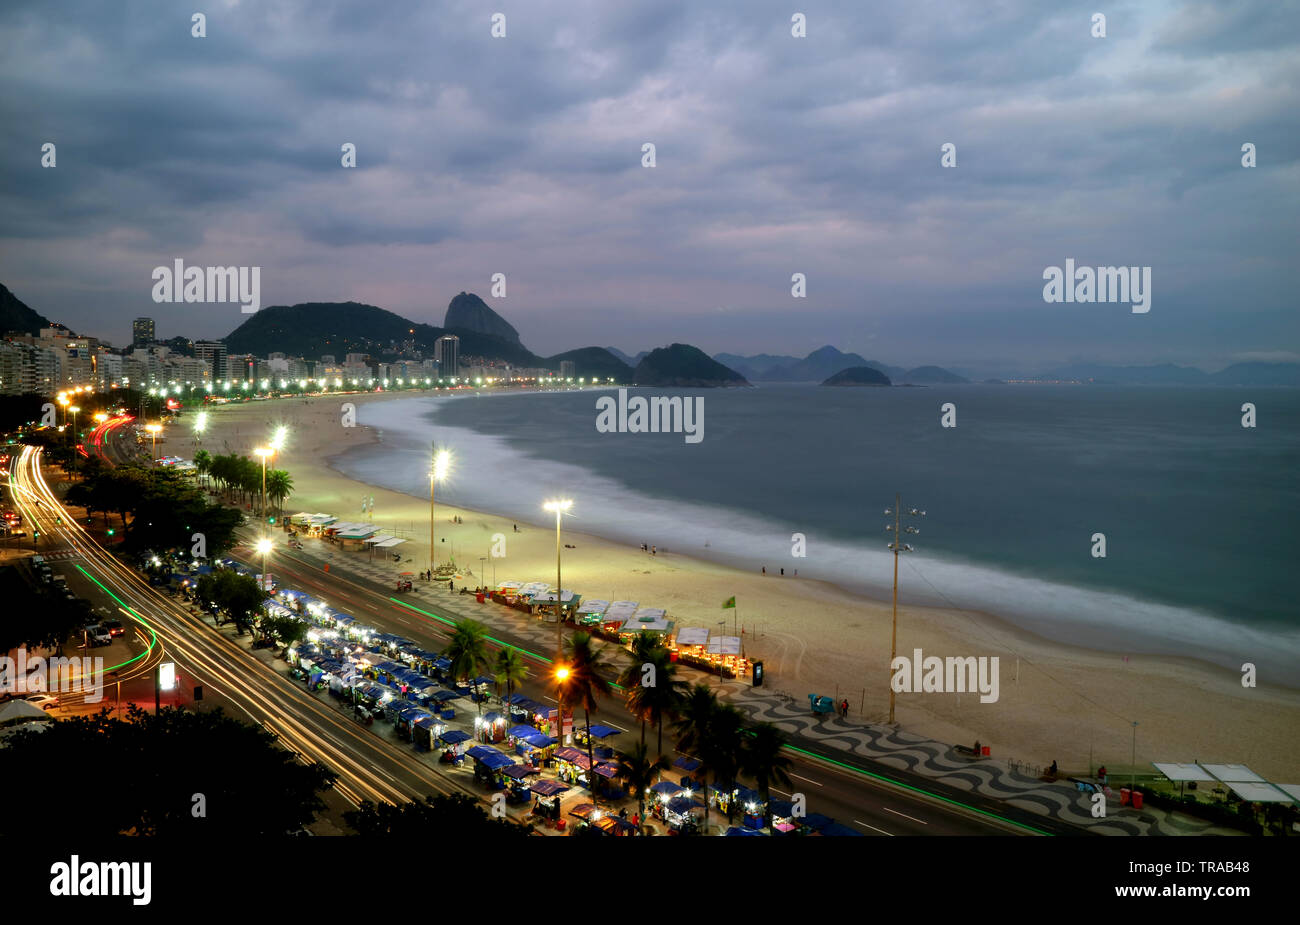 Superbe vue aérienne de la plage de Copacabana et pain de sucre au crépuscule, Rio de Janeiro, Brésil, Amérique du Sud Banque D'Images